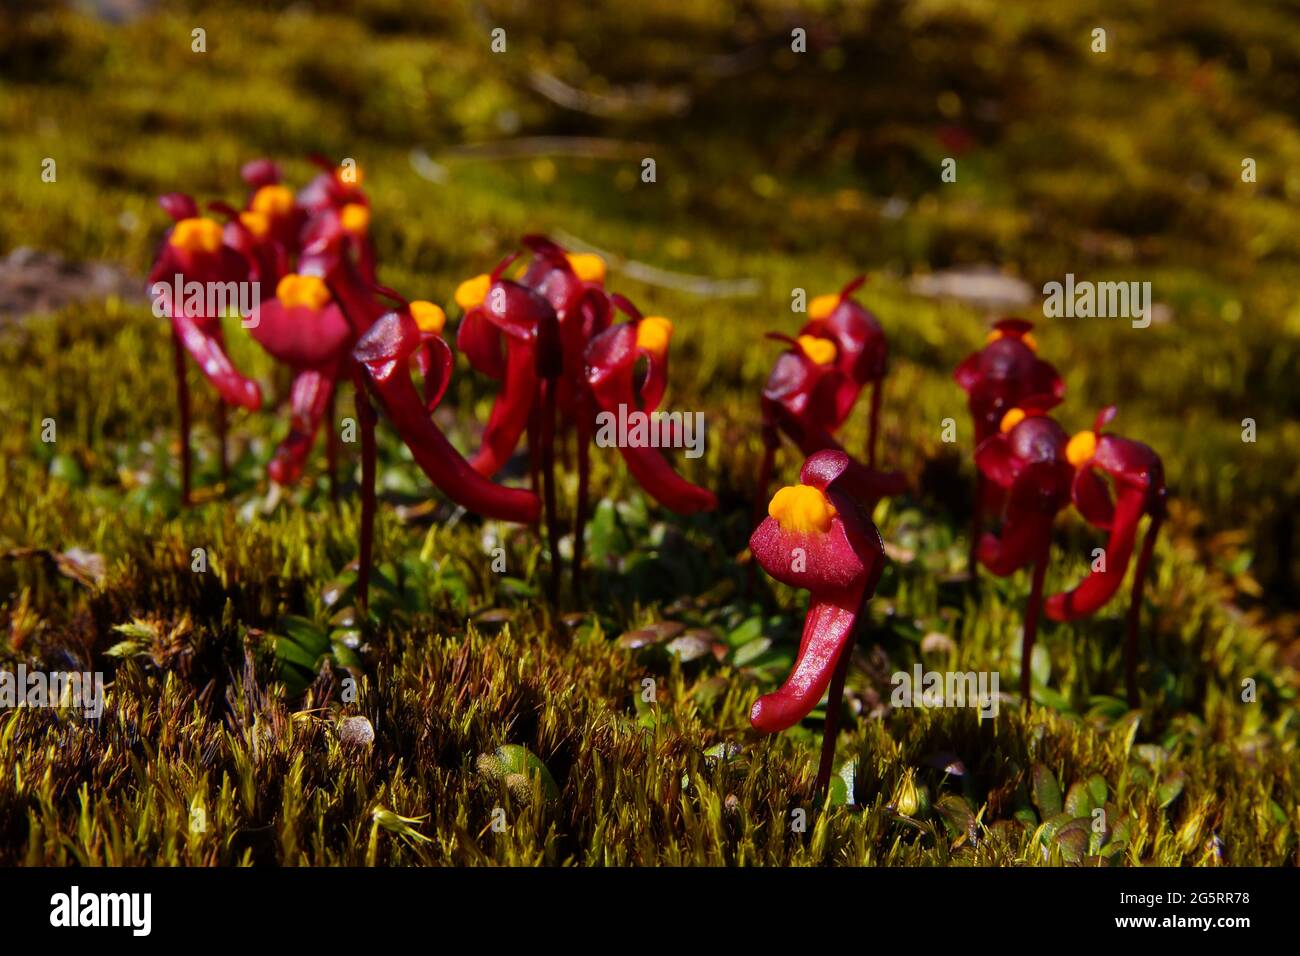 Abundant flowers of the tuberous bladderwort Utricularia menziesii, Australia Stock Photo